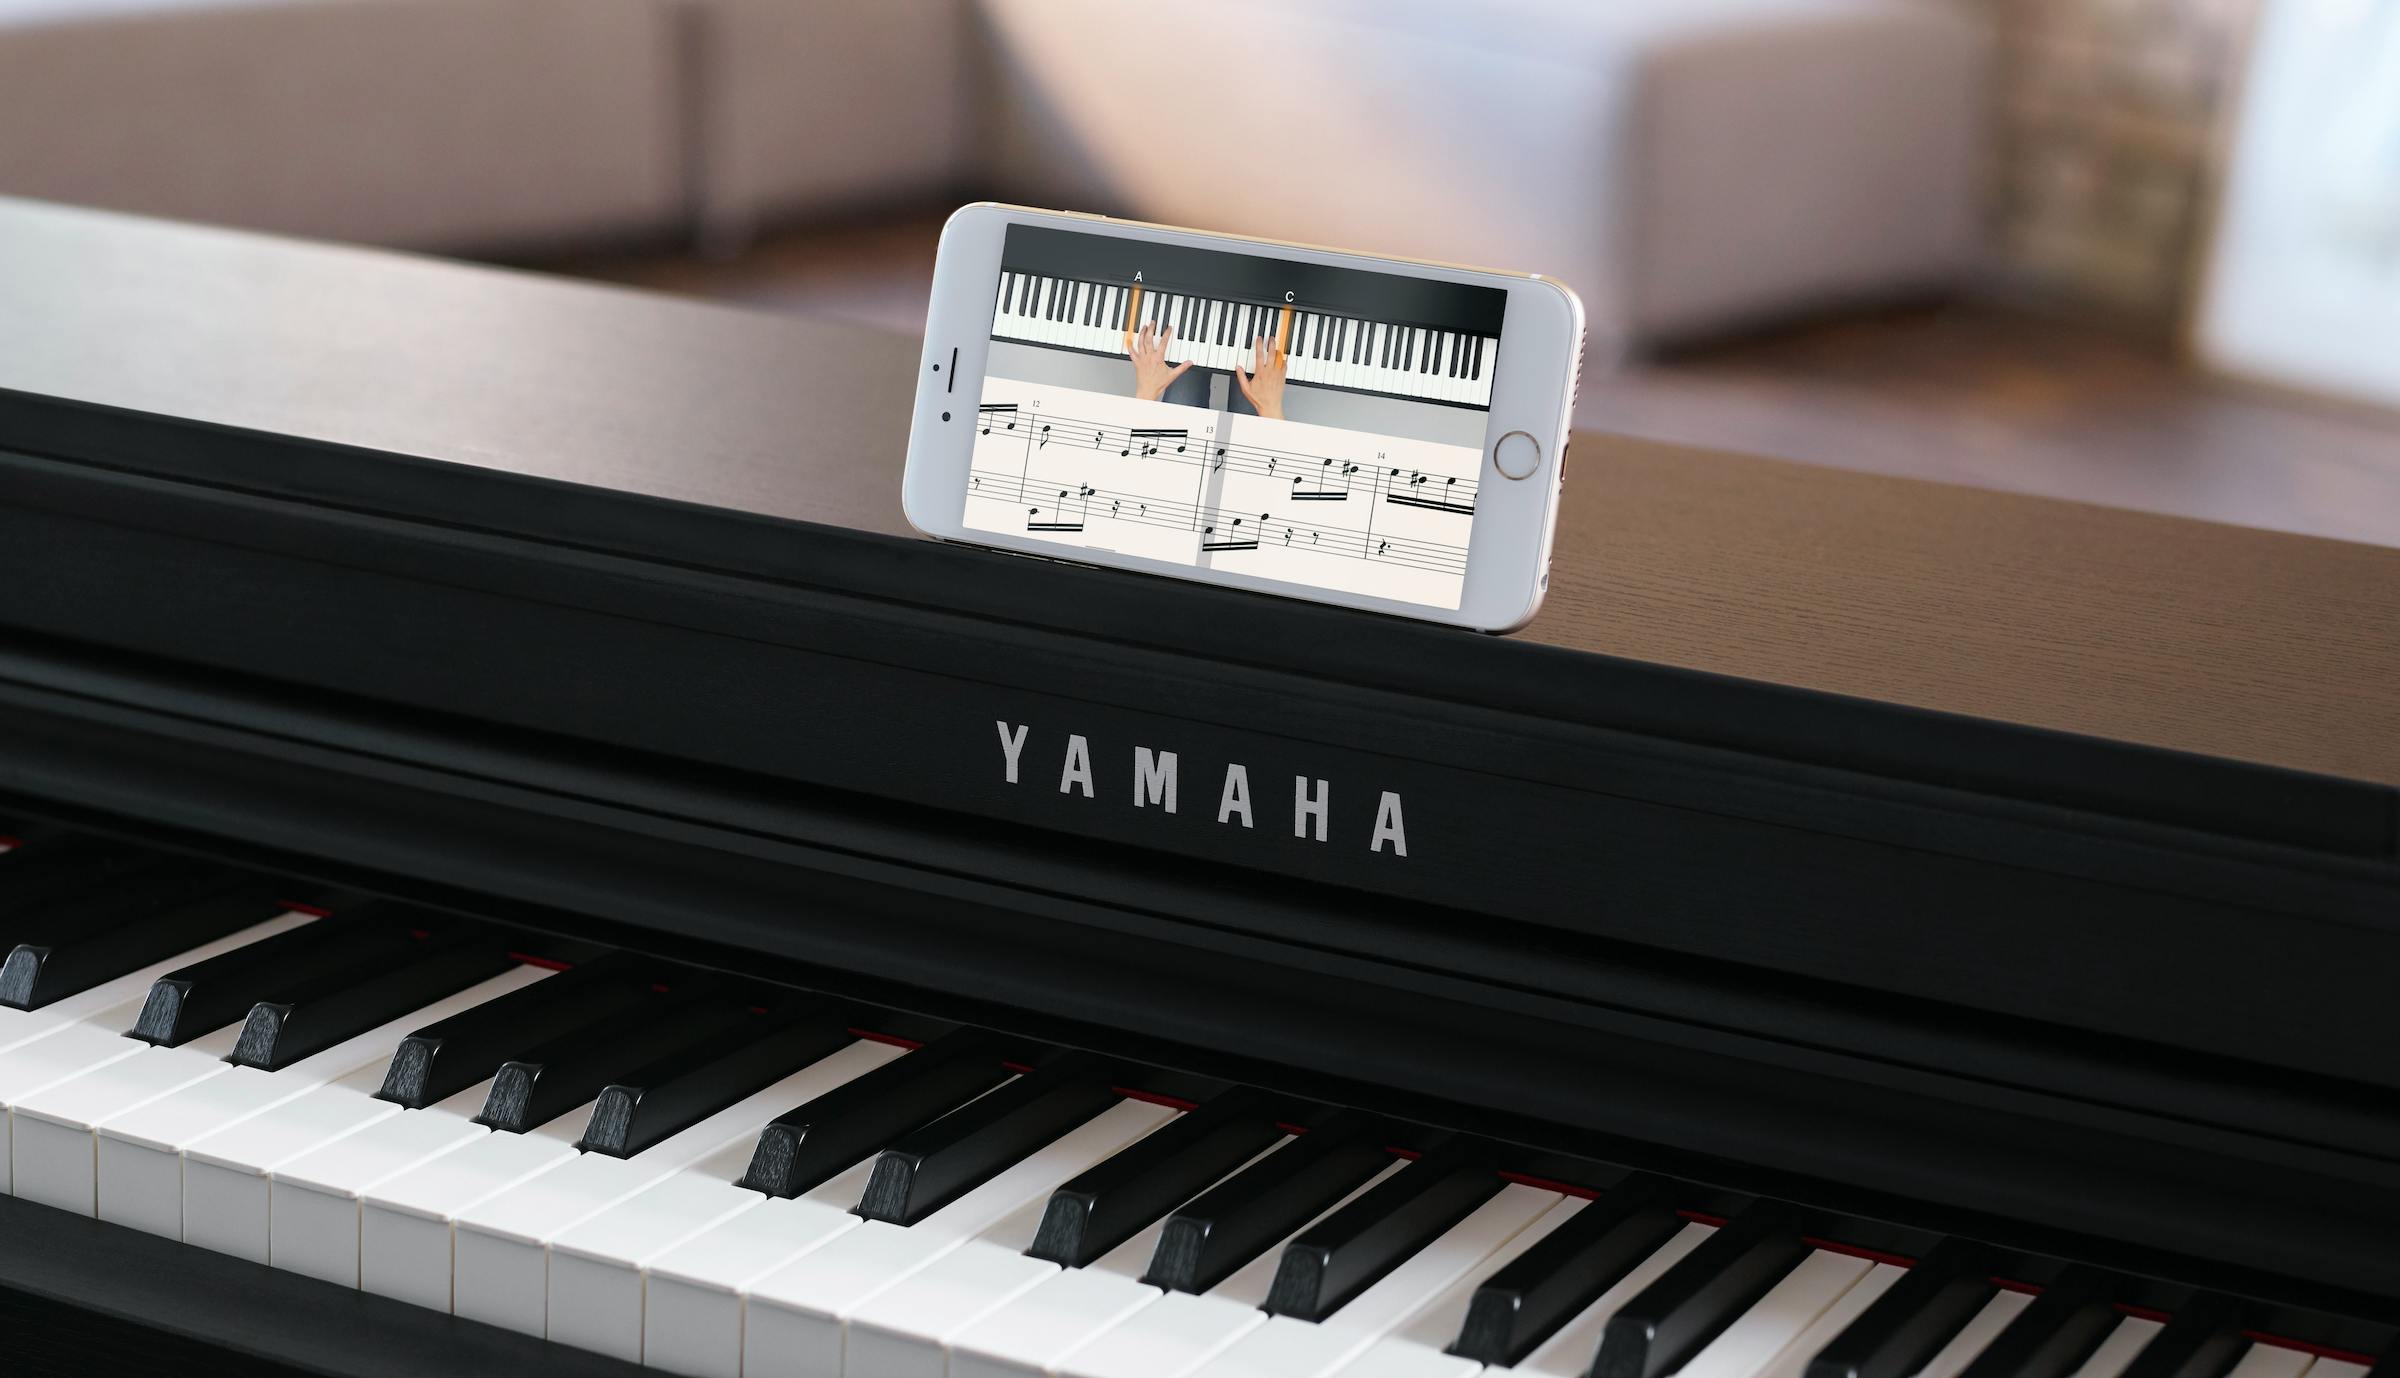 pianoforte Yamaha nero e uno smartphone con l'applicazione